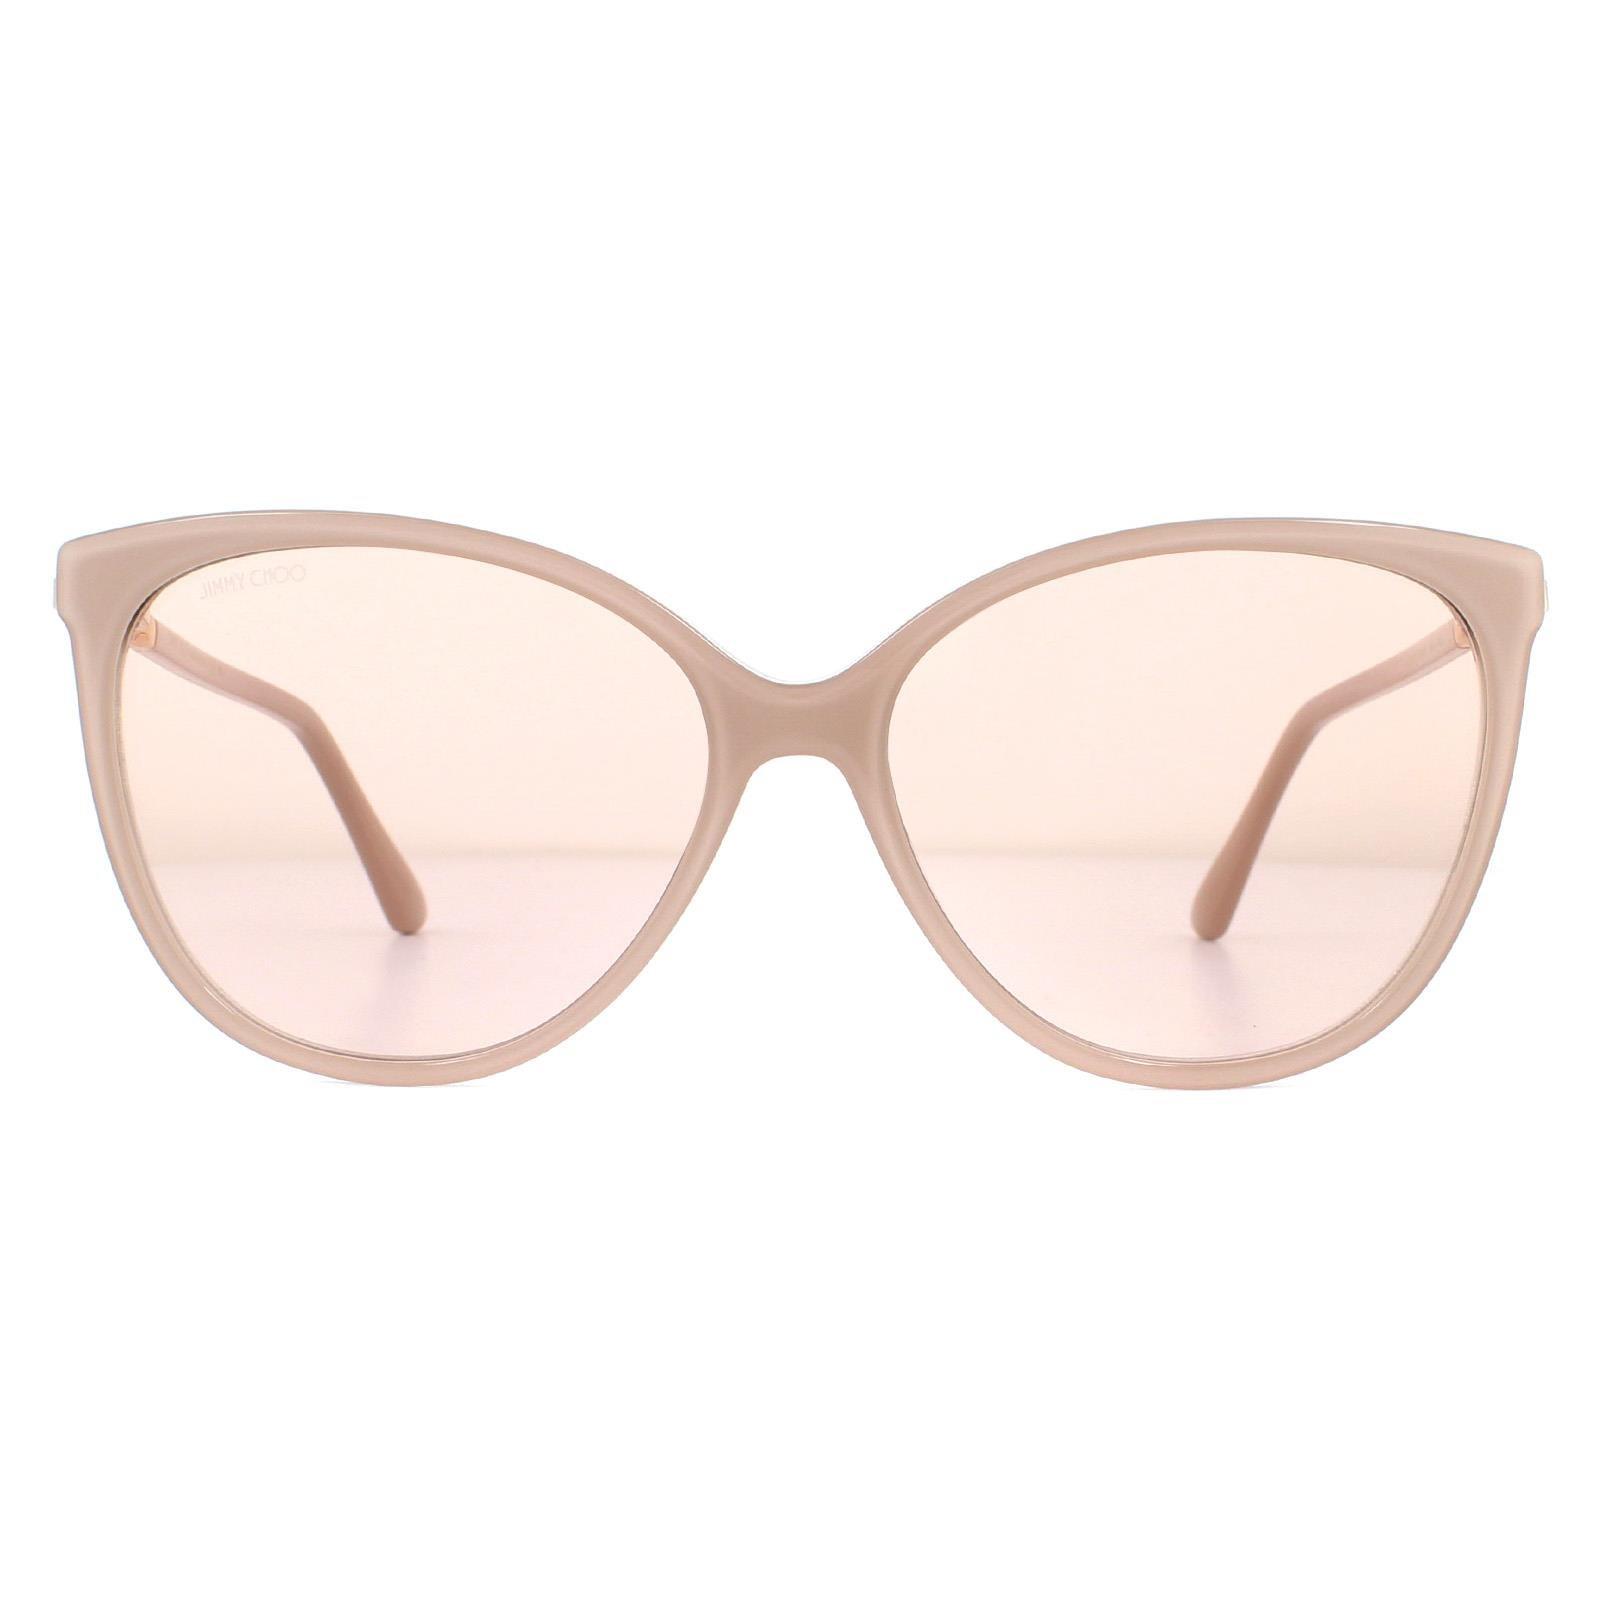 Зеркальные солнцезащитные очки телесного цвета с блестками и золотистым кошачьим глазом Jimmy Choo, розовый